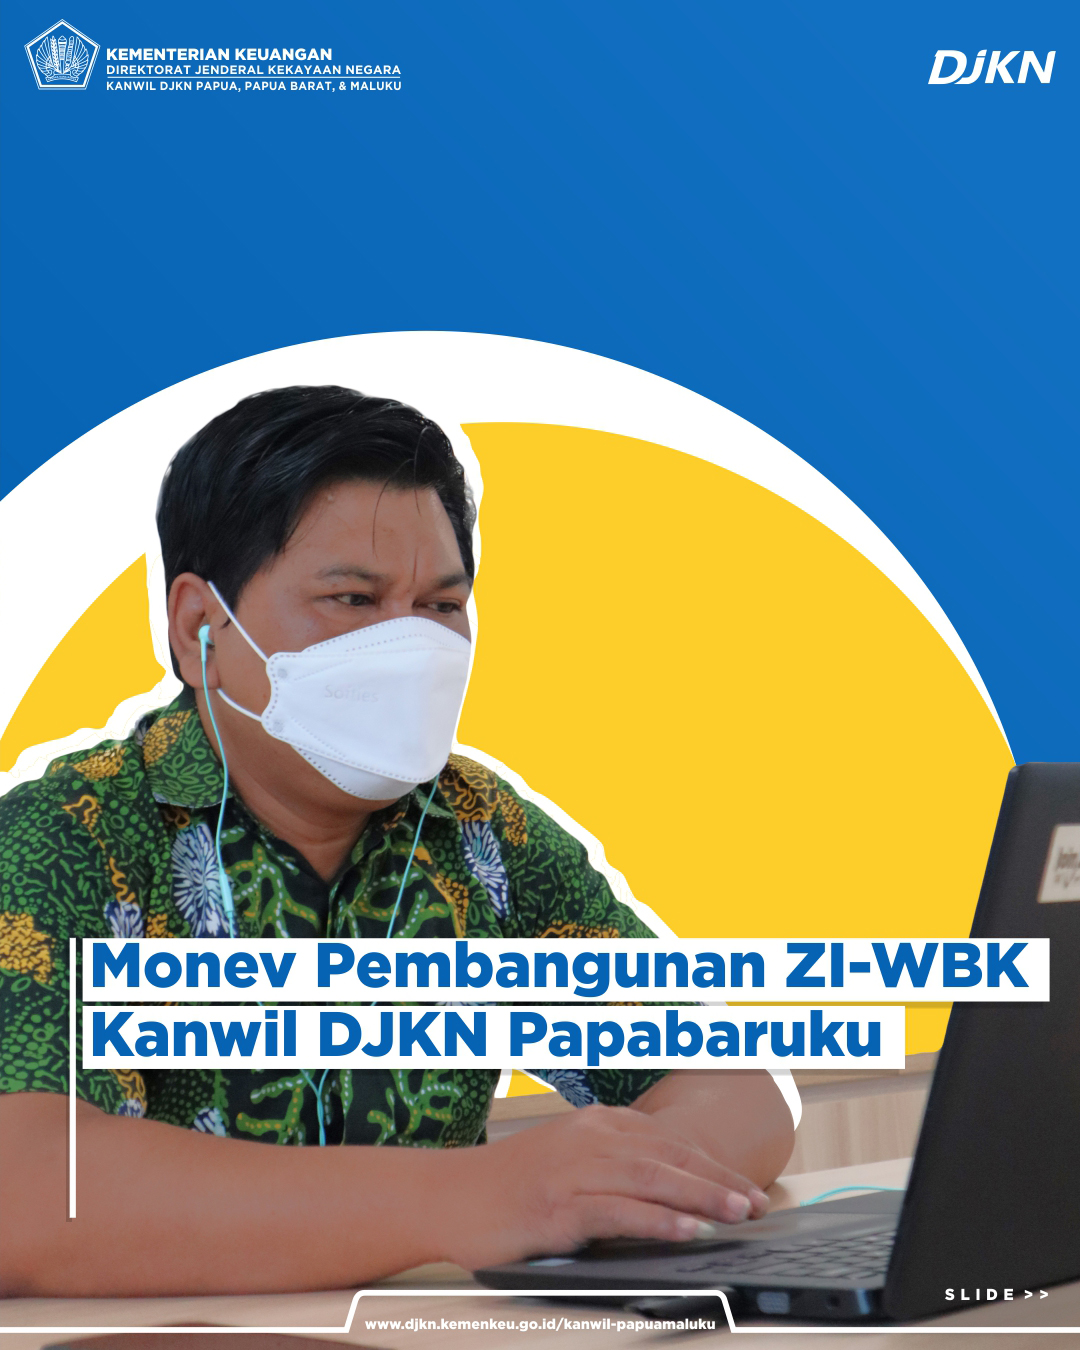 Rapat Monev Pembangunan ZI-WBK Kanwil DJKN Papabaruku